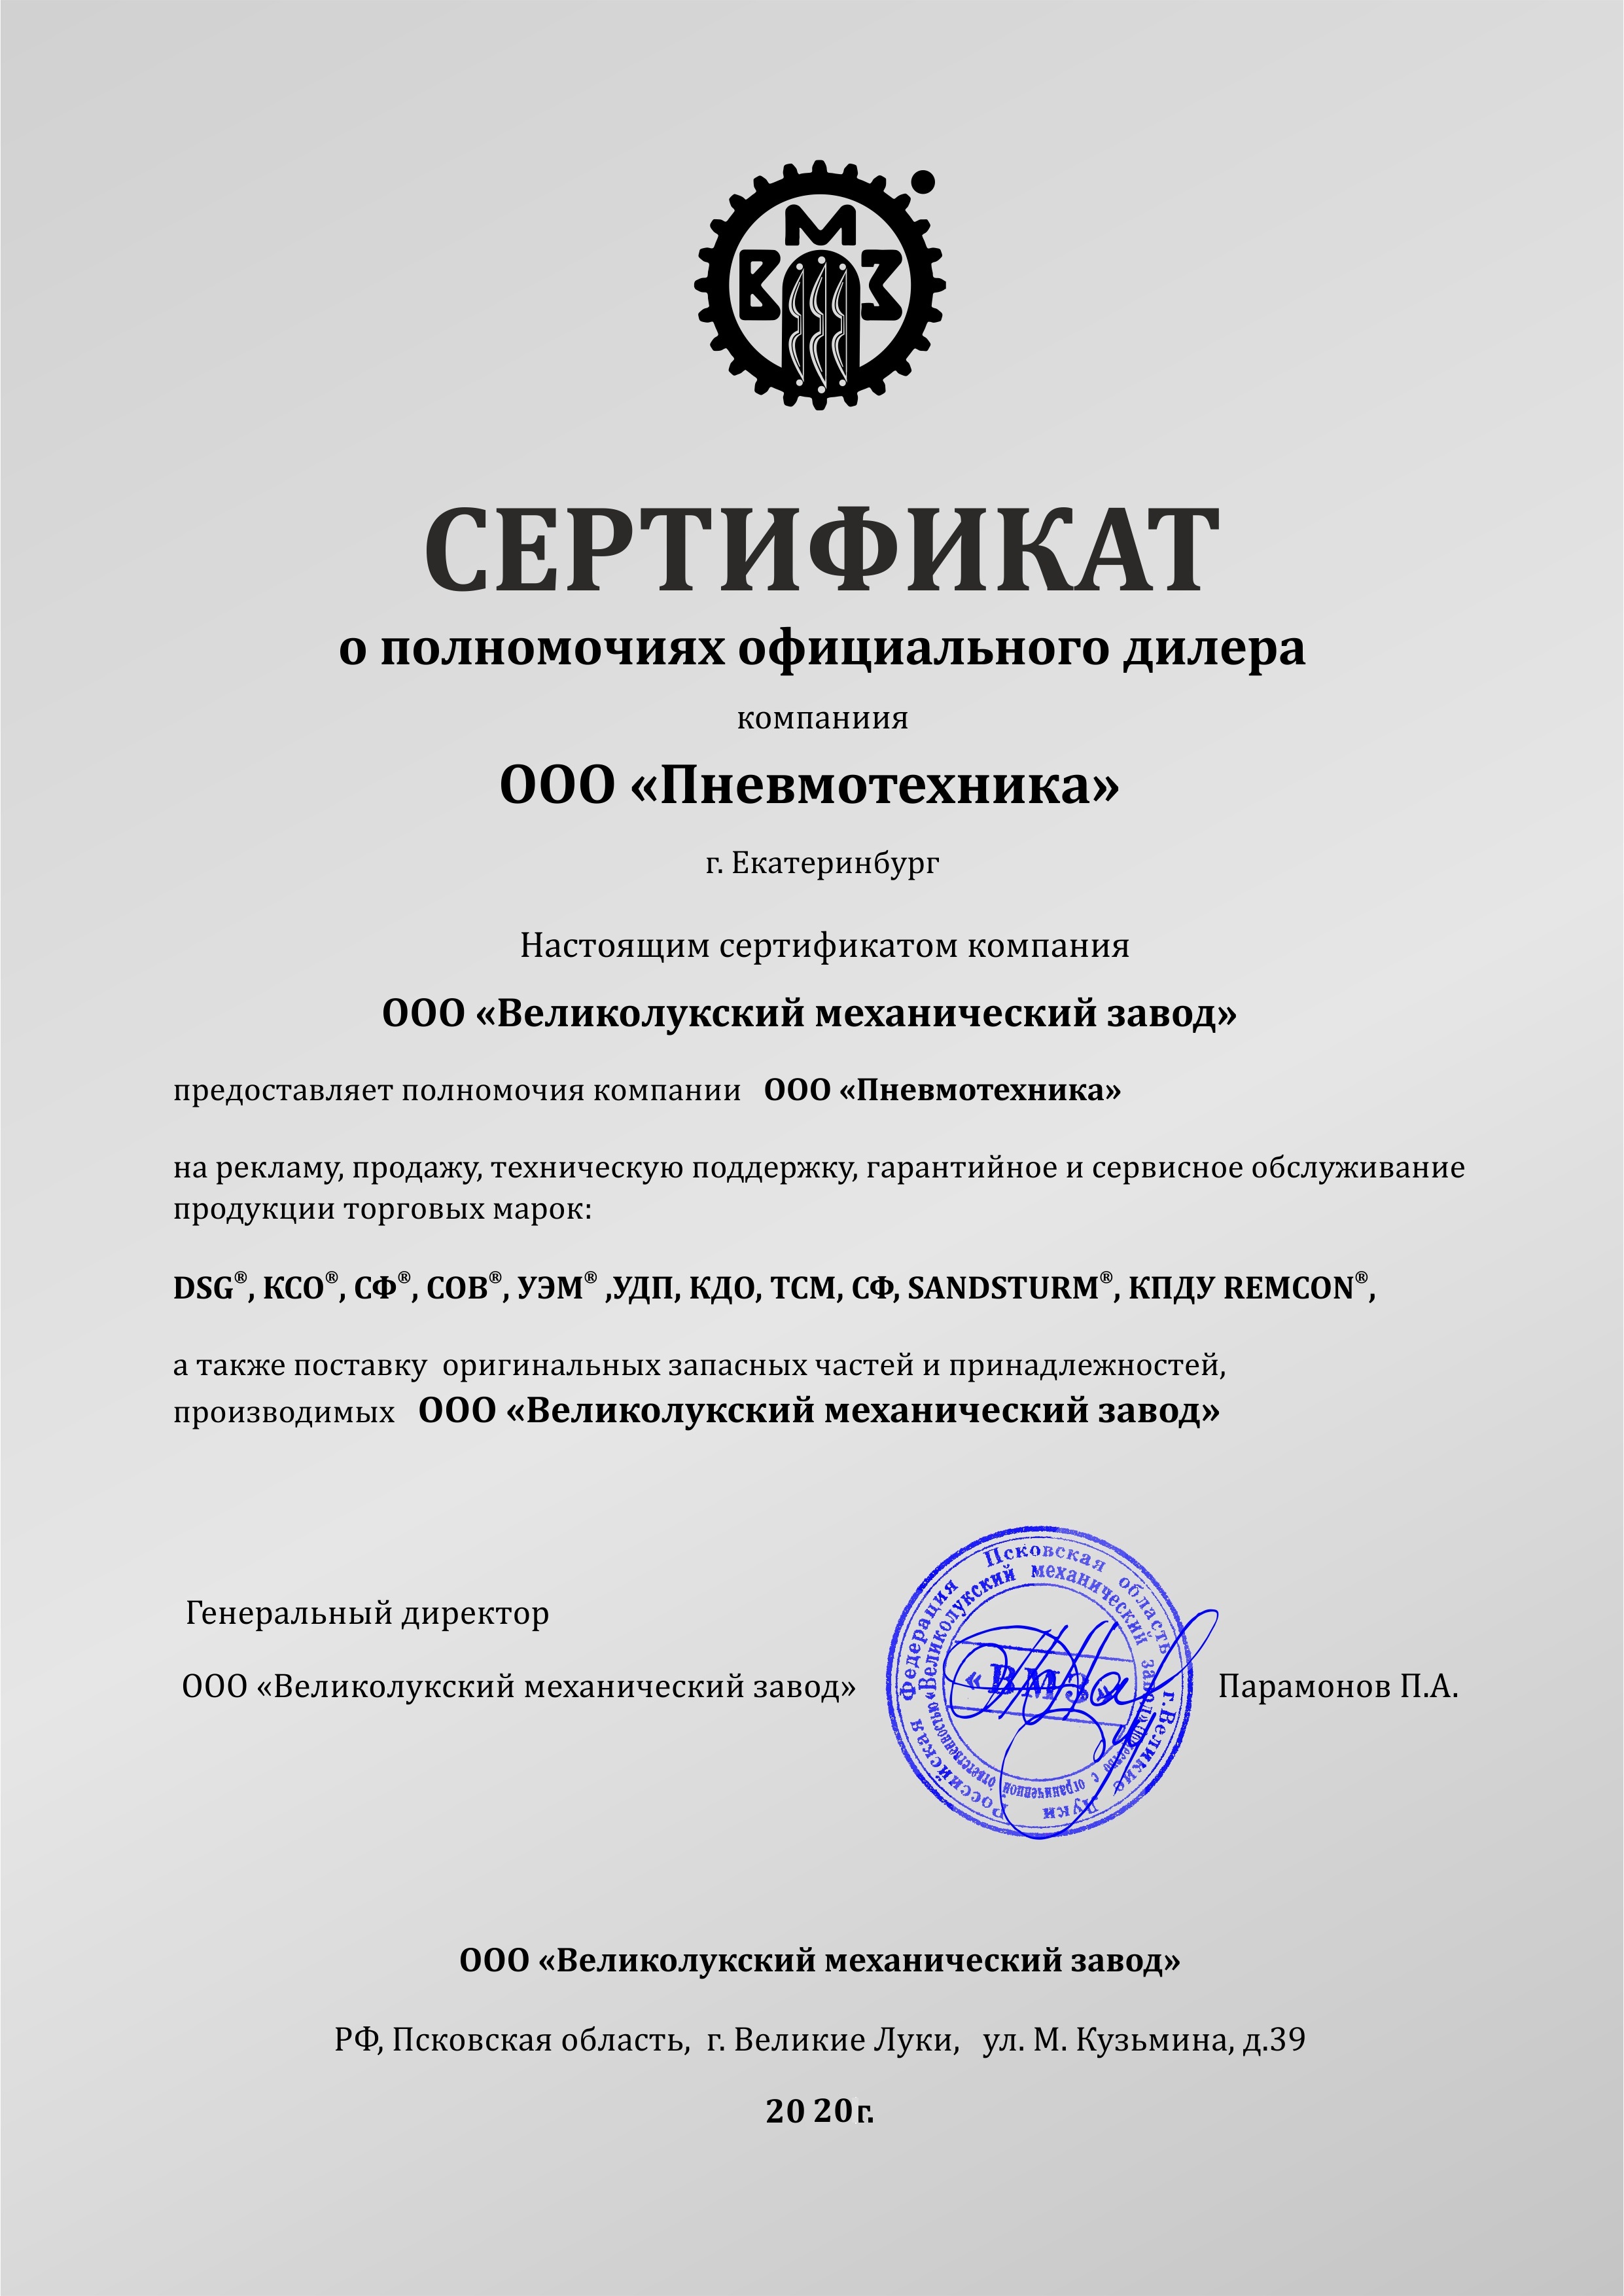 Сертификат о полномочиях официального дилера ООО "Великолукский механический завод"